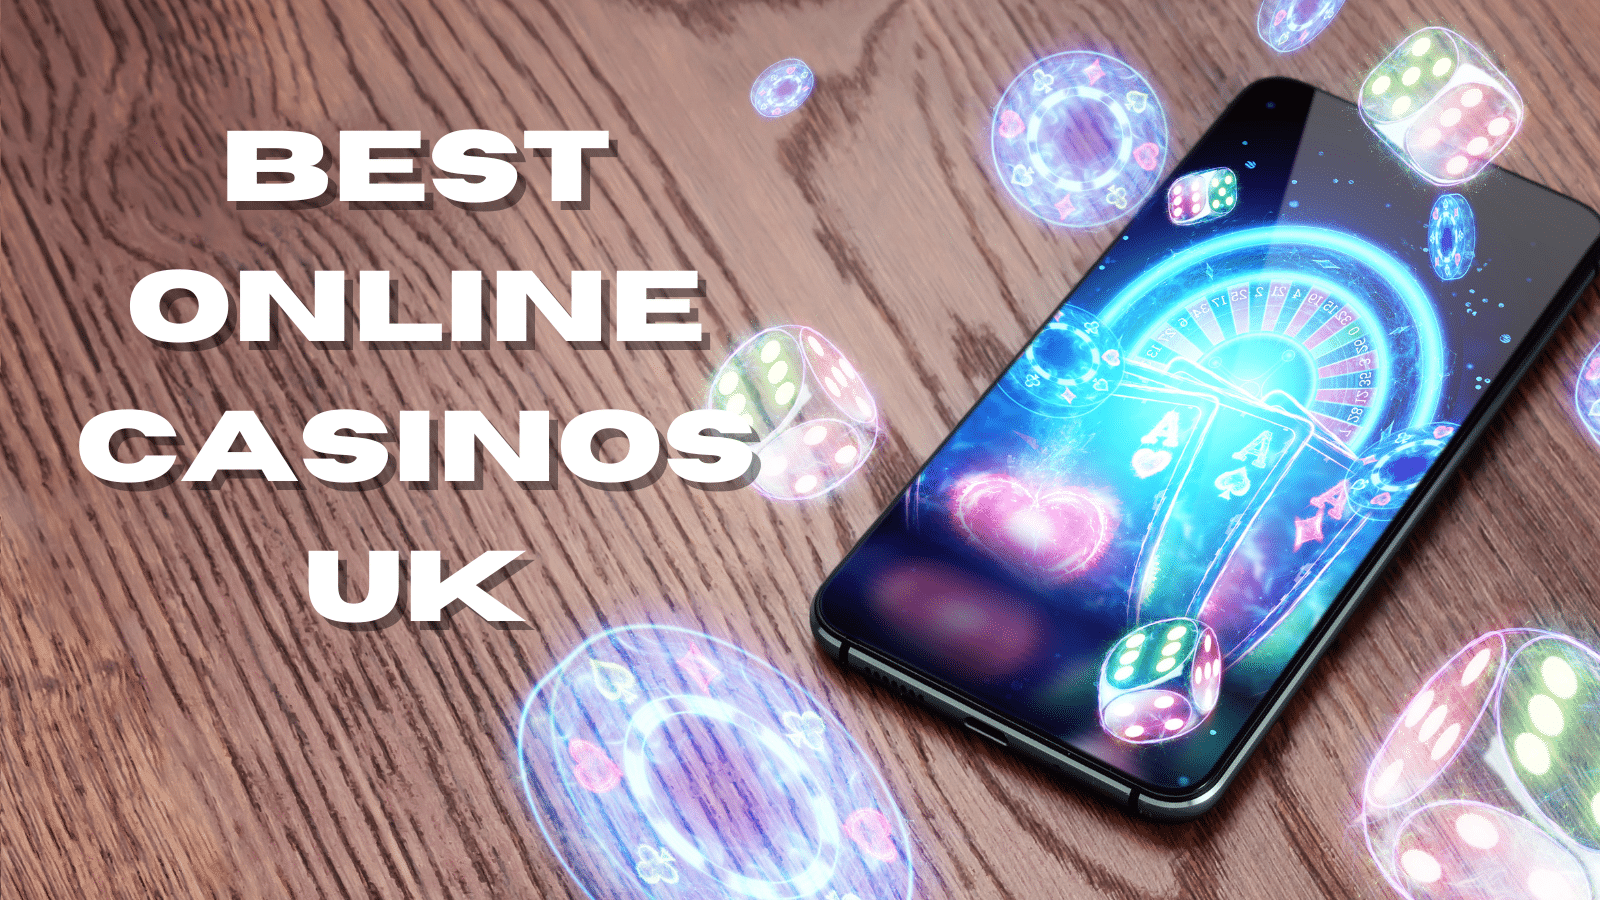 best online casinos uk image